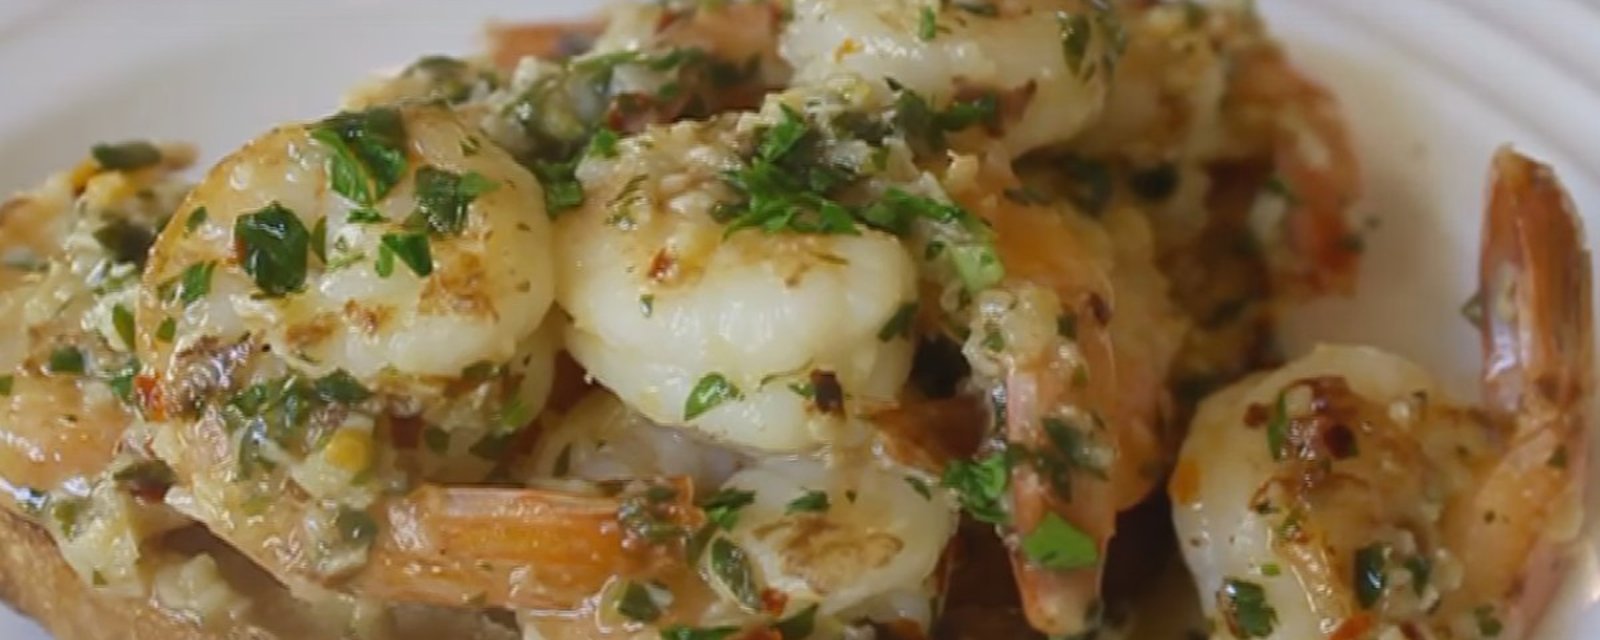 Ces crevettes à l'ail se cuisinent avec des ingrédients bien simples pour un résultat parfait.